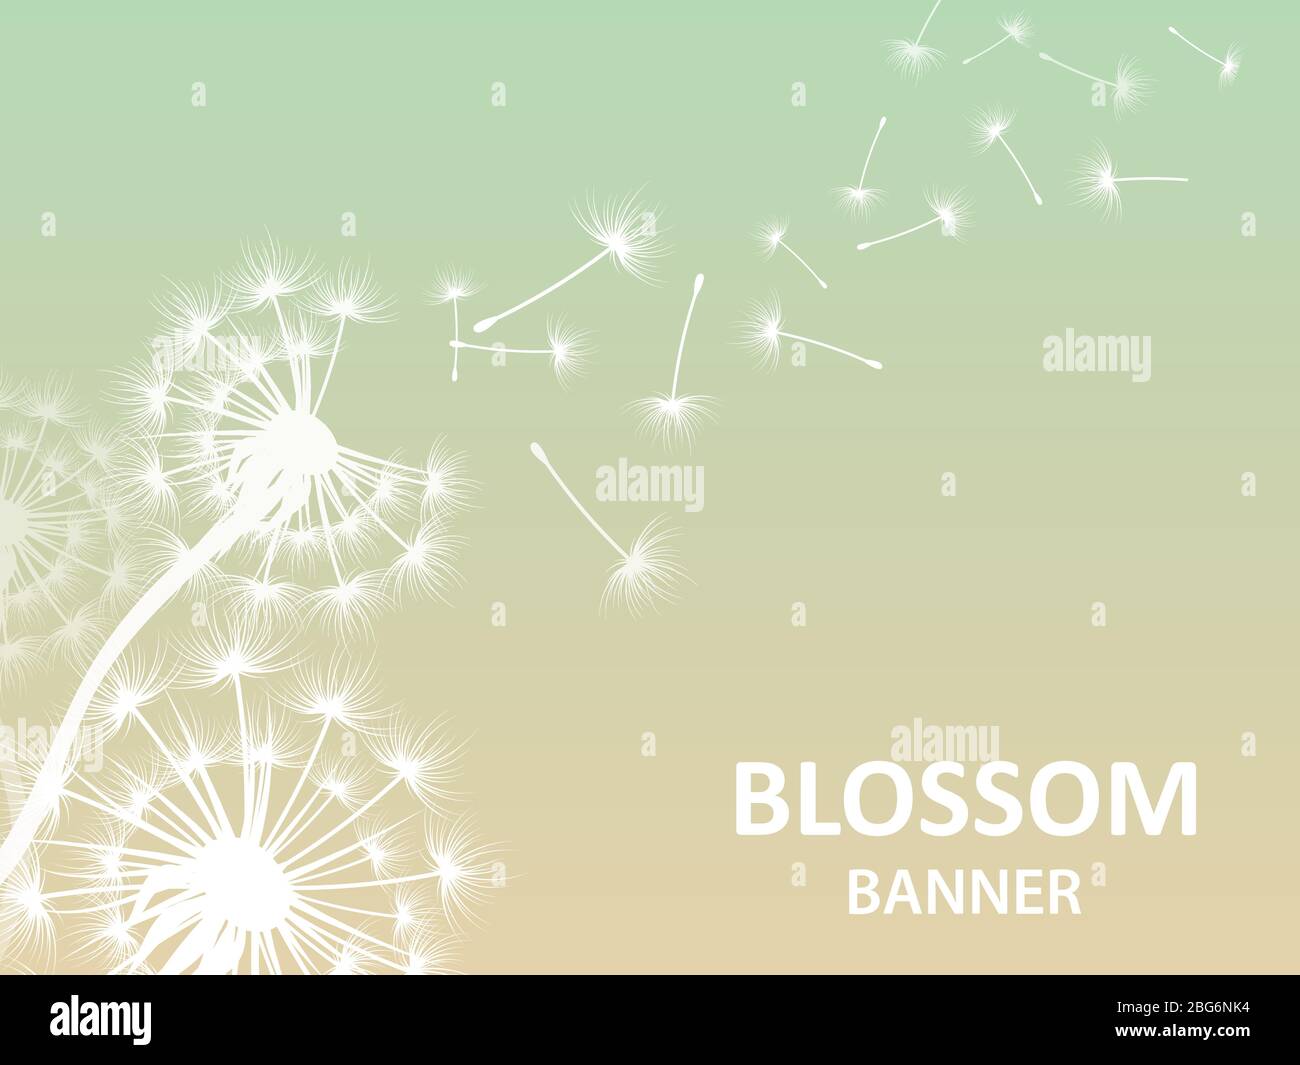 Blossom banner background with dandelion white silhouette. Blossom flower silhouette, fluffy dandelion, vector illustration Stock Vector